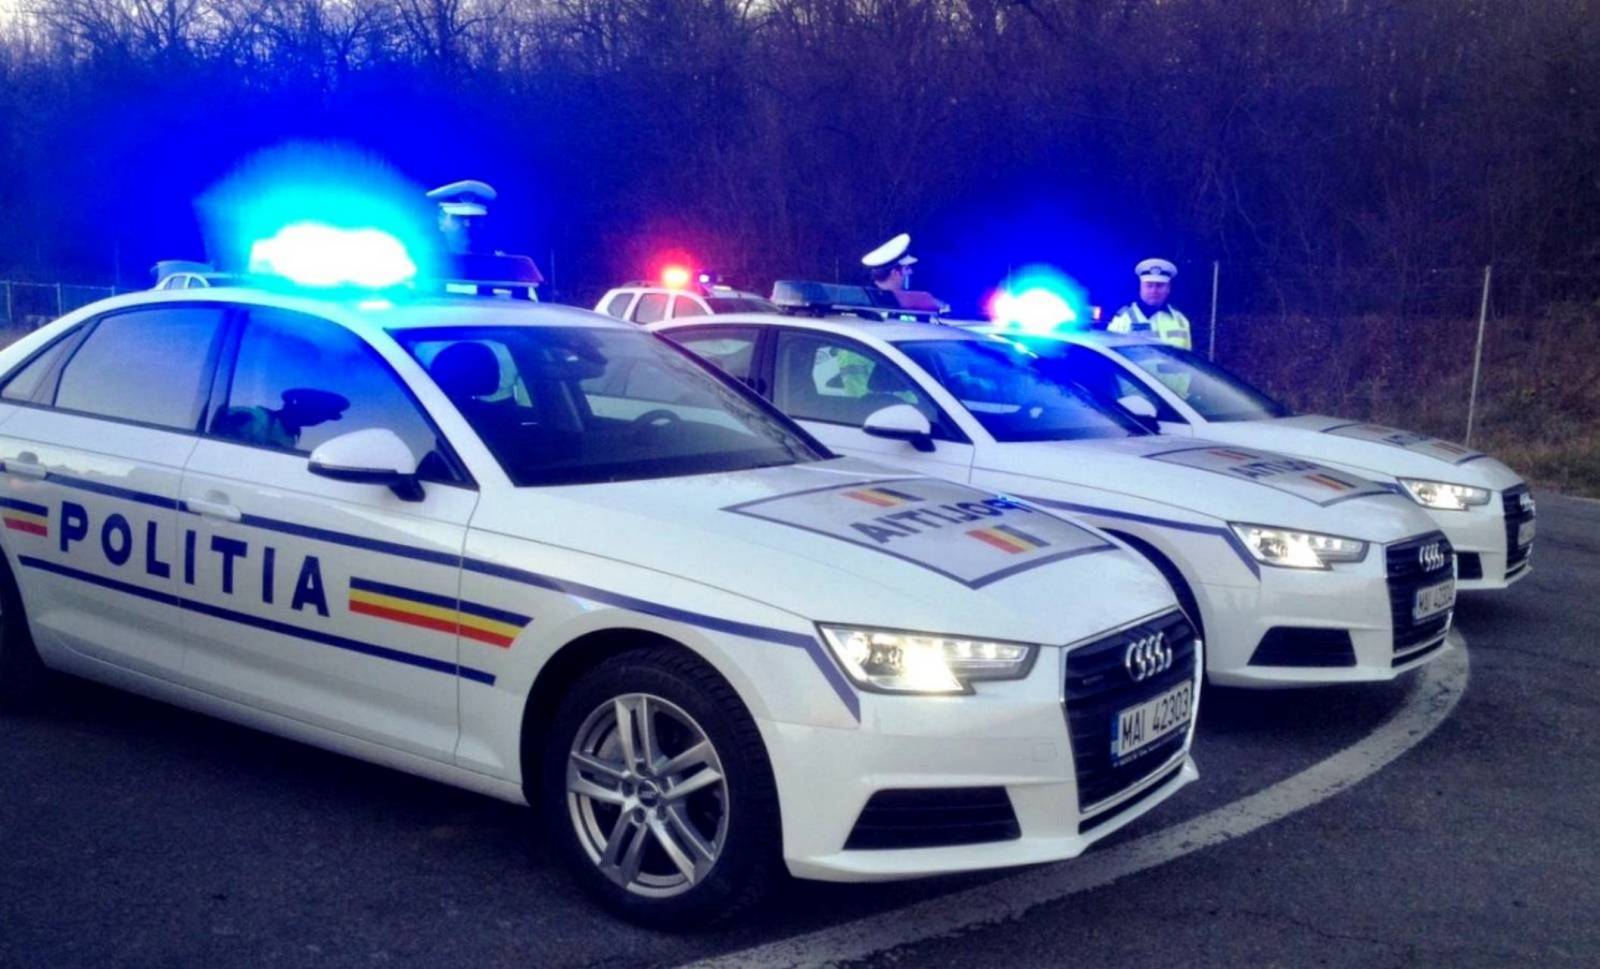 Romanian poliisi Erittäin tärkeä varoitus mustalle perjantaille 2020